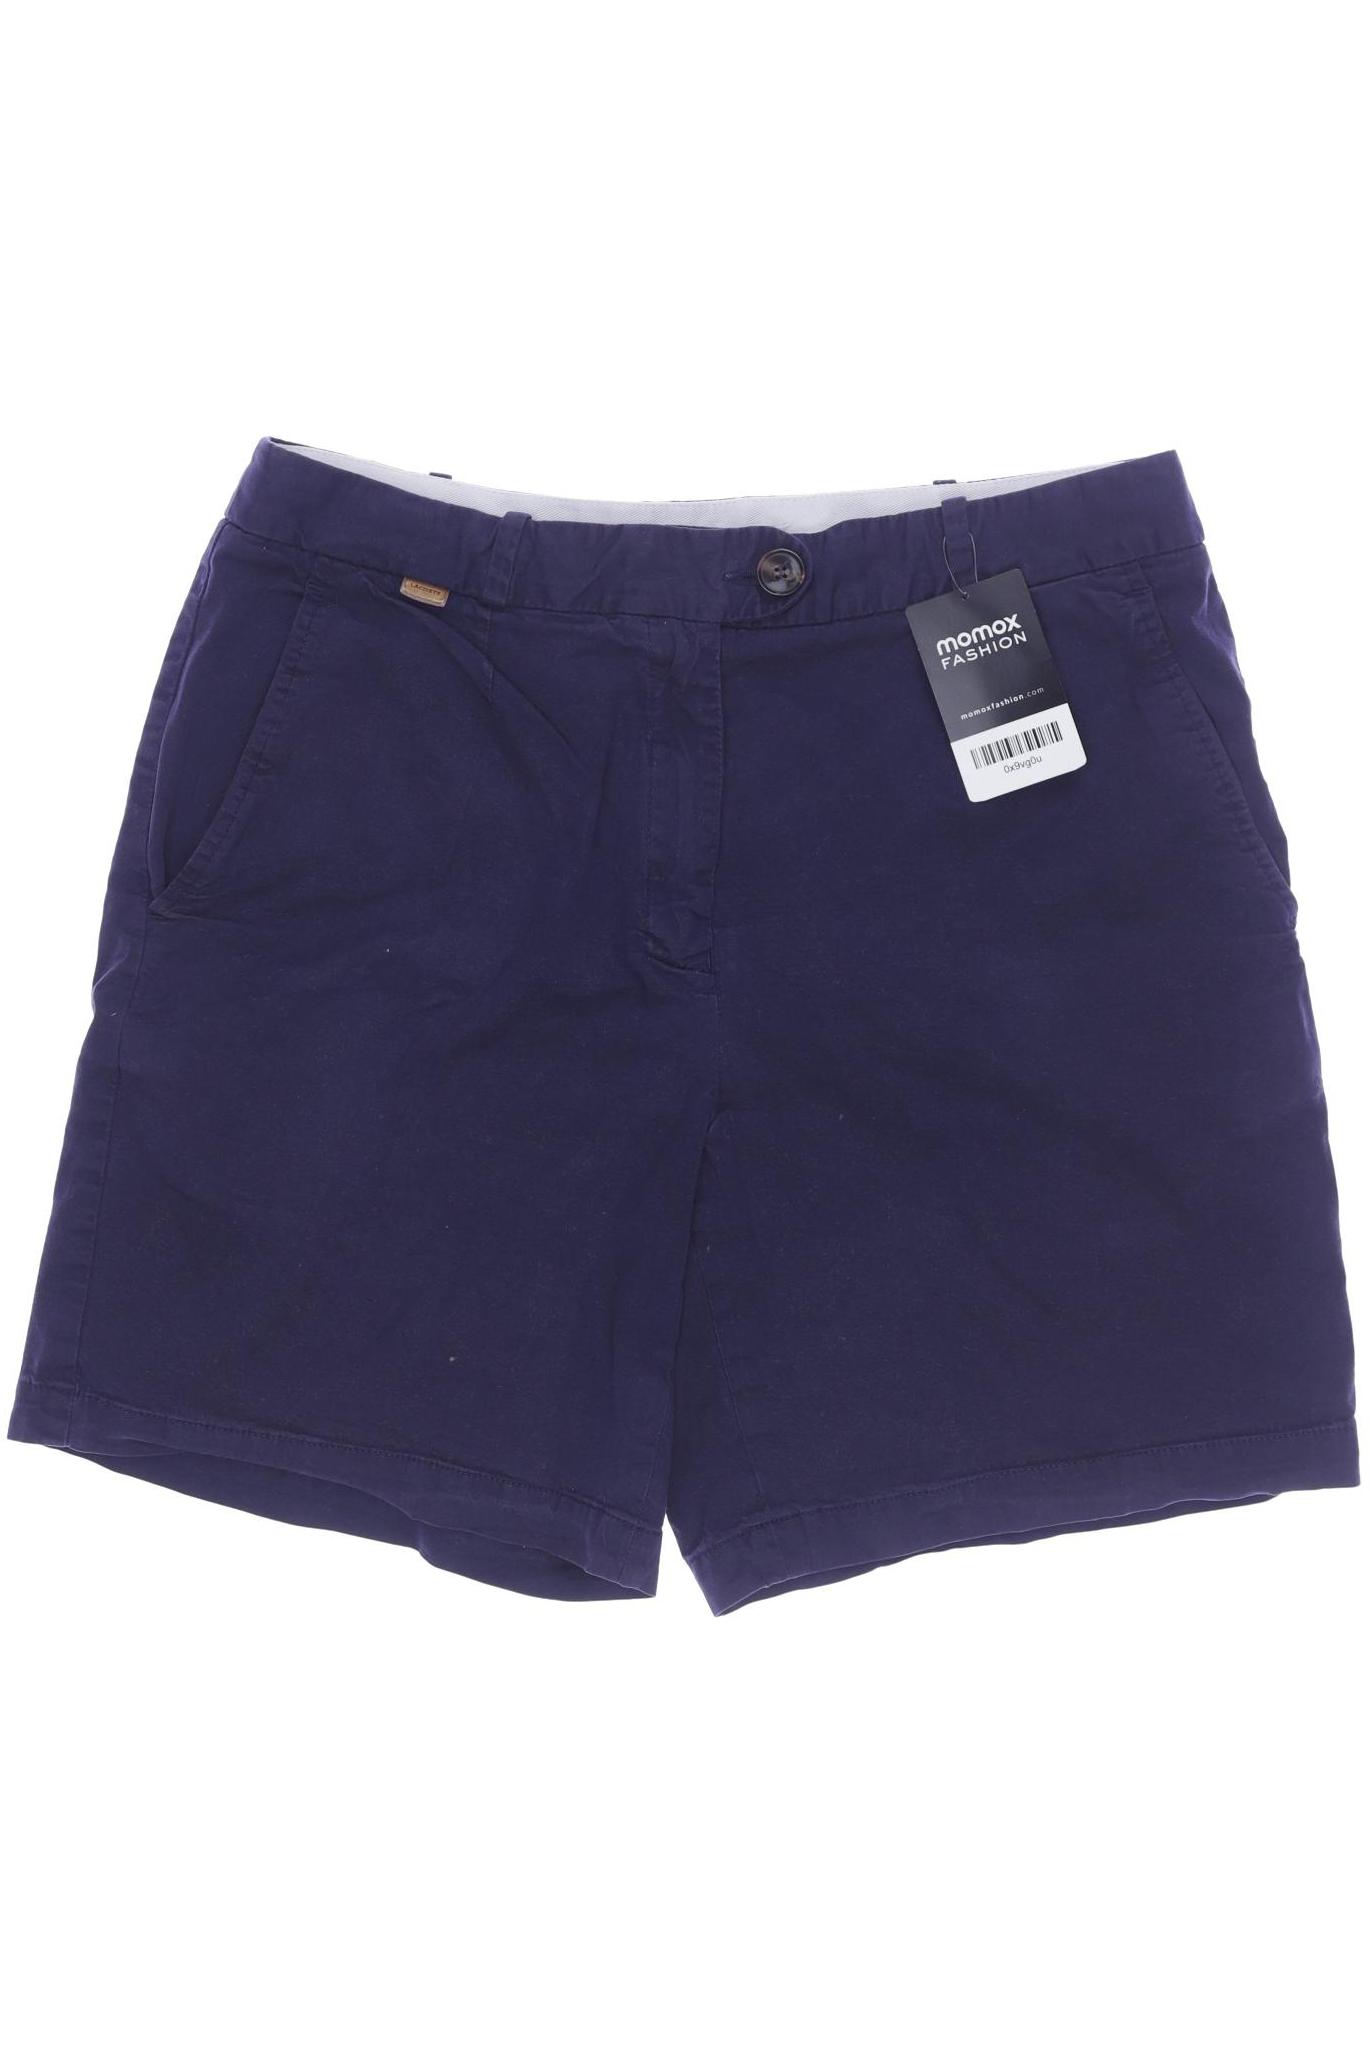 Lacoste Damen Shorts, marineblau, Gr. 38 von Lacoste